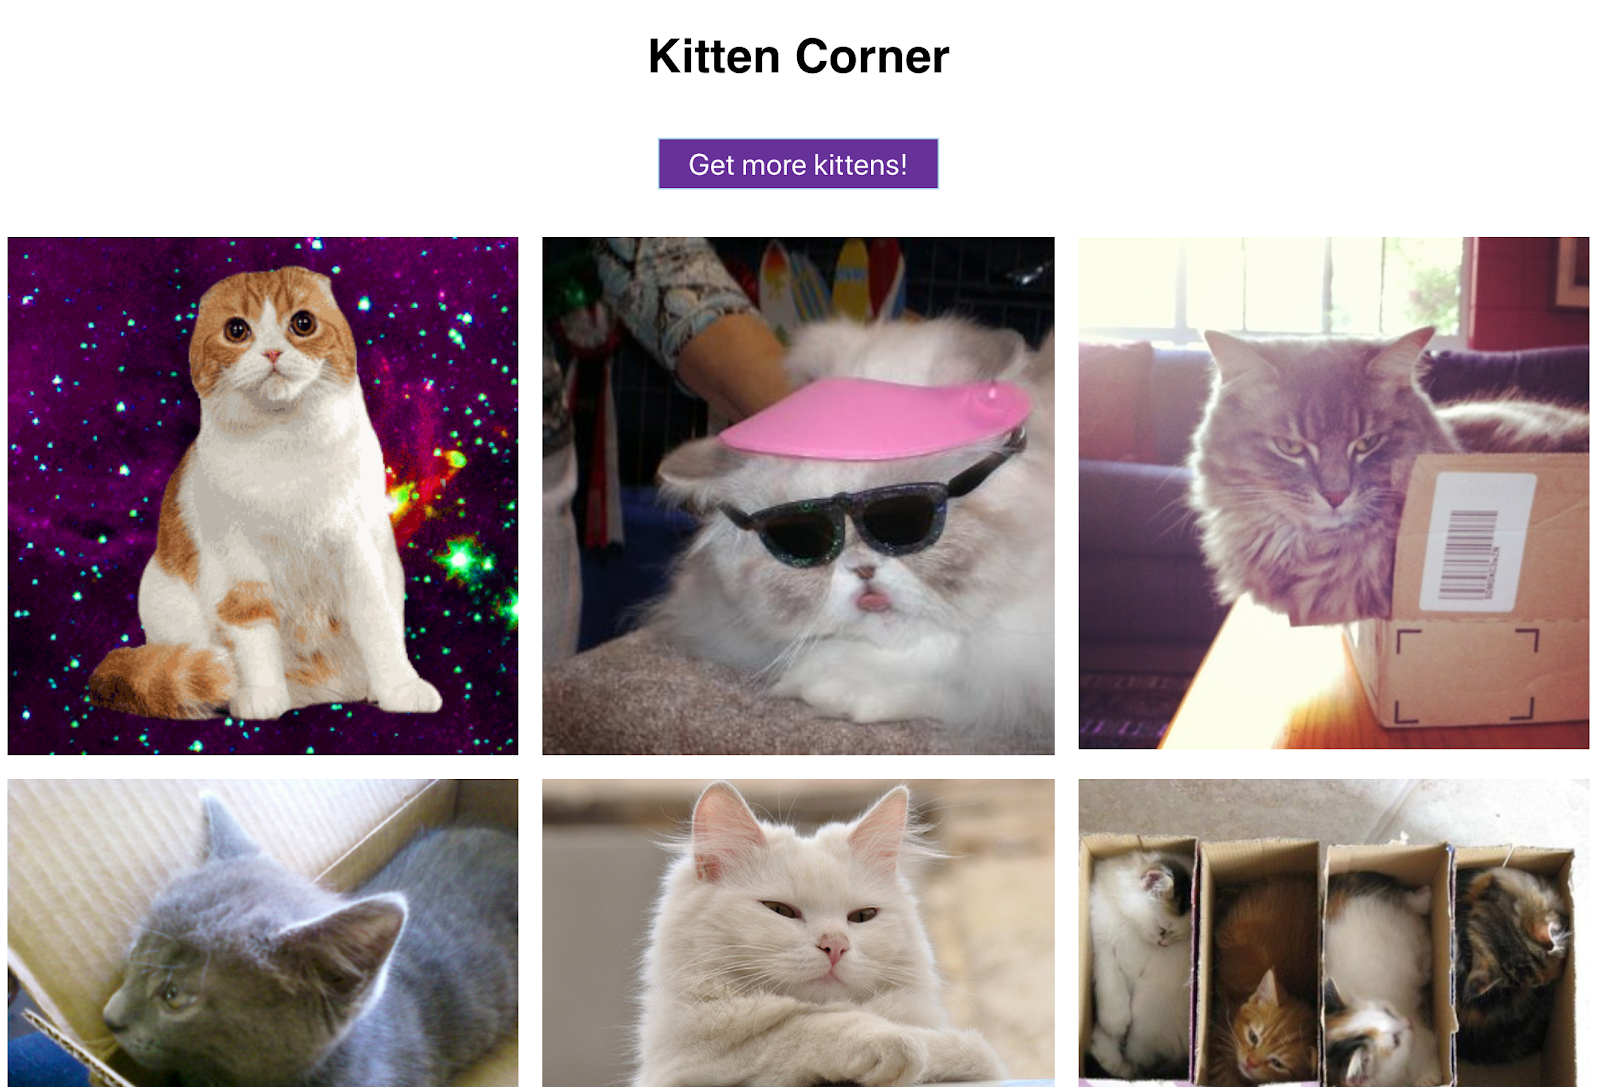 O app tem tudo o que você precisa: imagens de gatinhos dispostas em grade e um botão para mostrar mais.